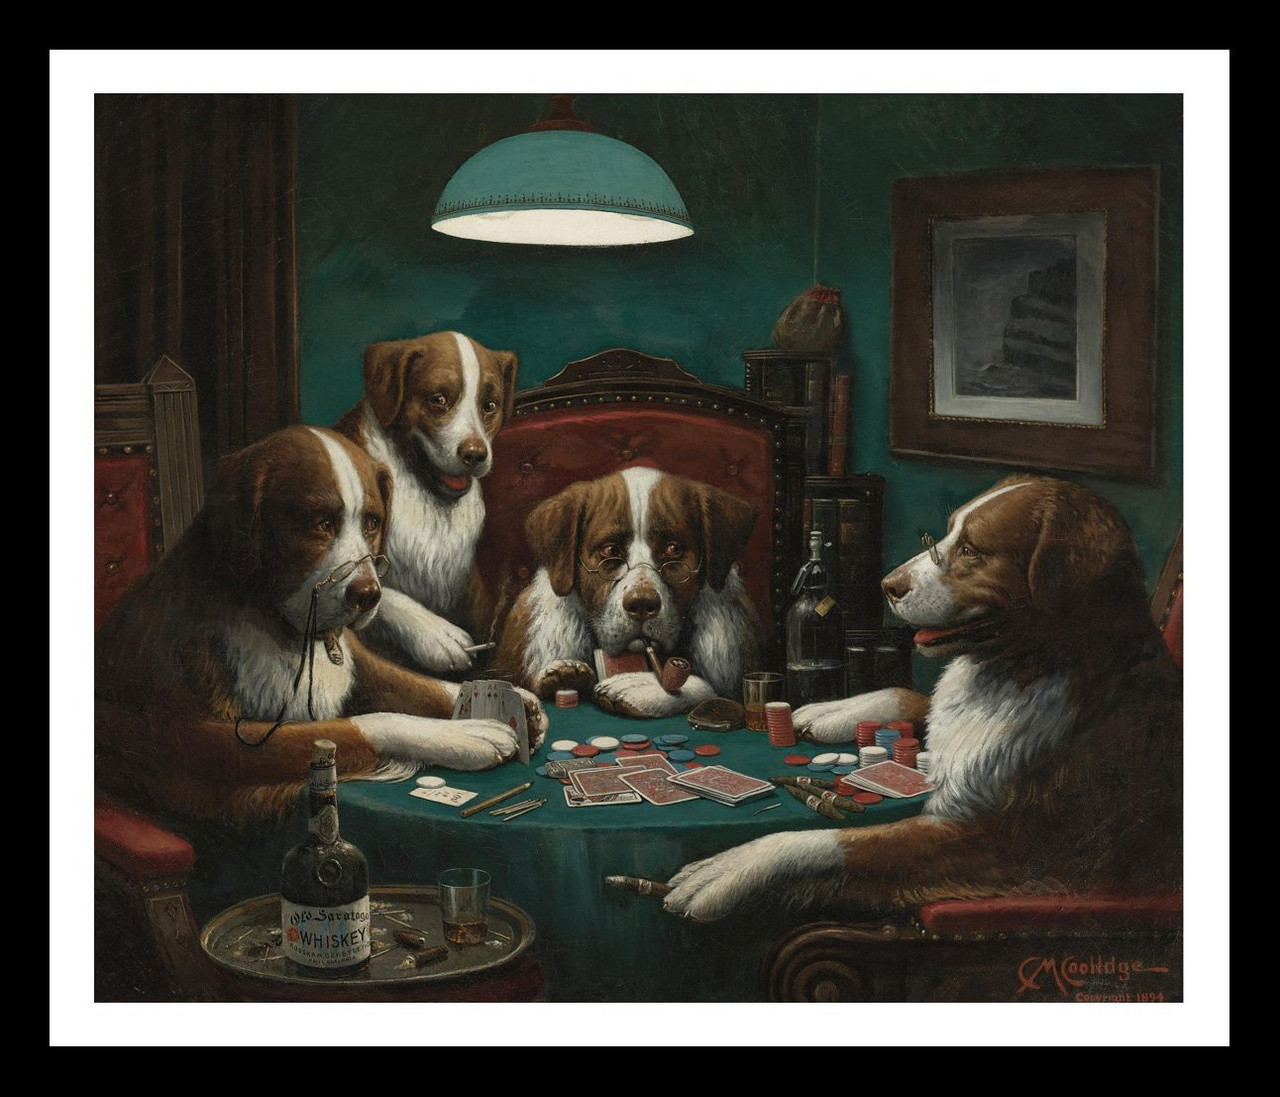 Собаки играют в покер кассиус кулидж. Кассиус Маркеллус Кулидж. Кассиус Кулидж картины. Кассиус Маркеллус Кулидж собаки играют в Покер. Собаки играют в Покер картина.